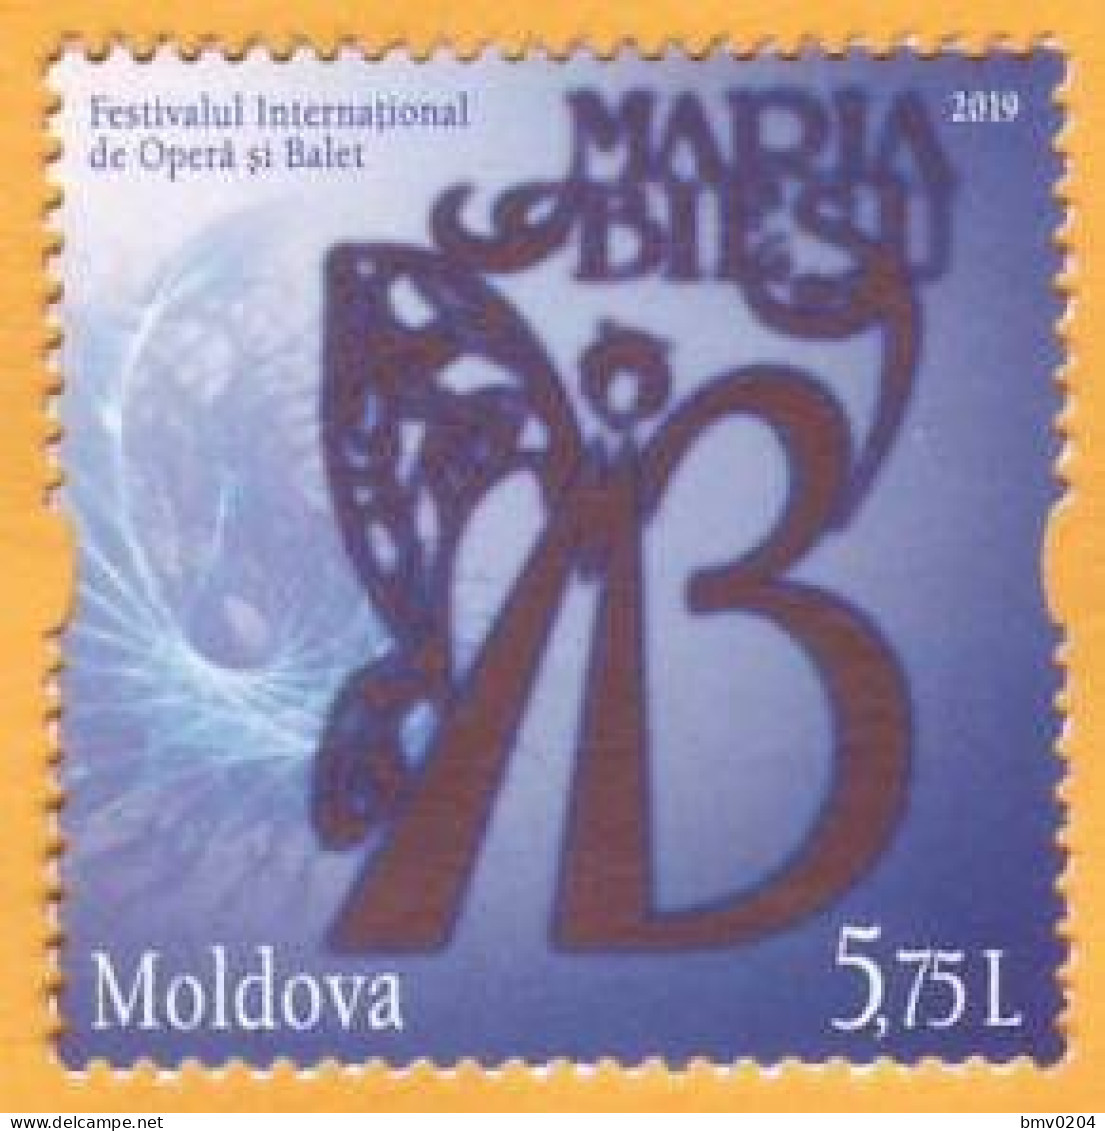 2019 Moldova Moldavie  International Festival. Maria Biesu. Opera. Ballet. Singer. Artist. Art 1v Mint - Teatro